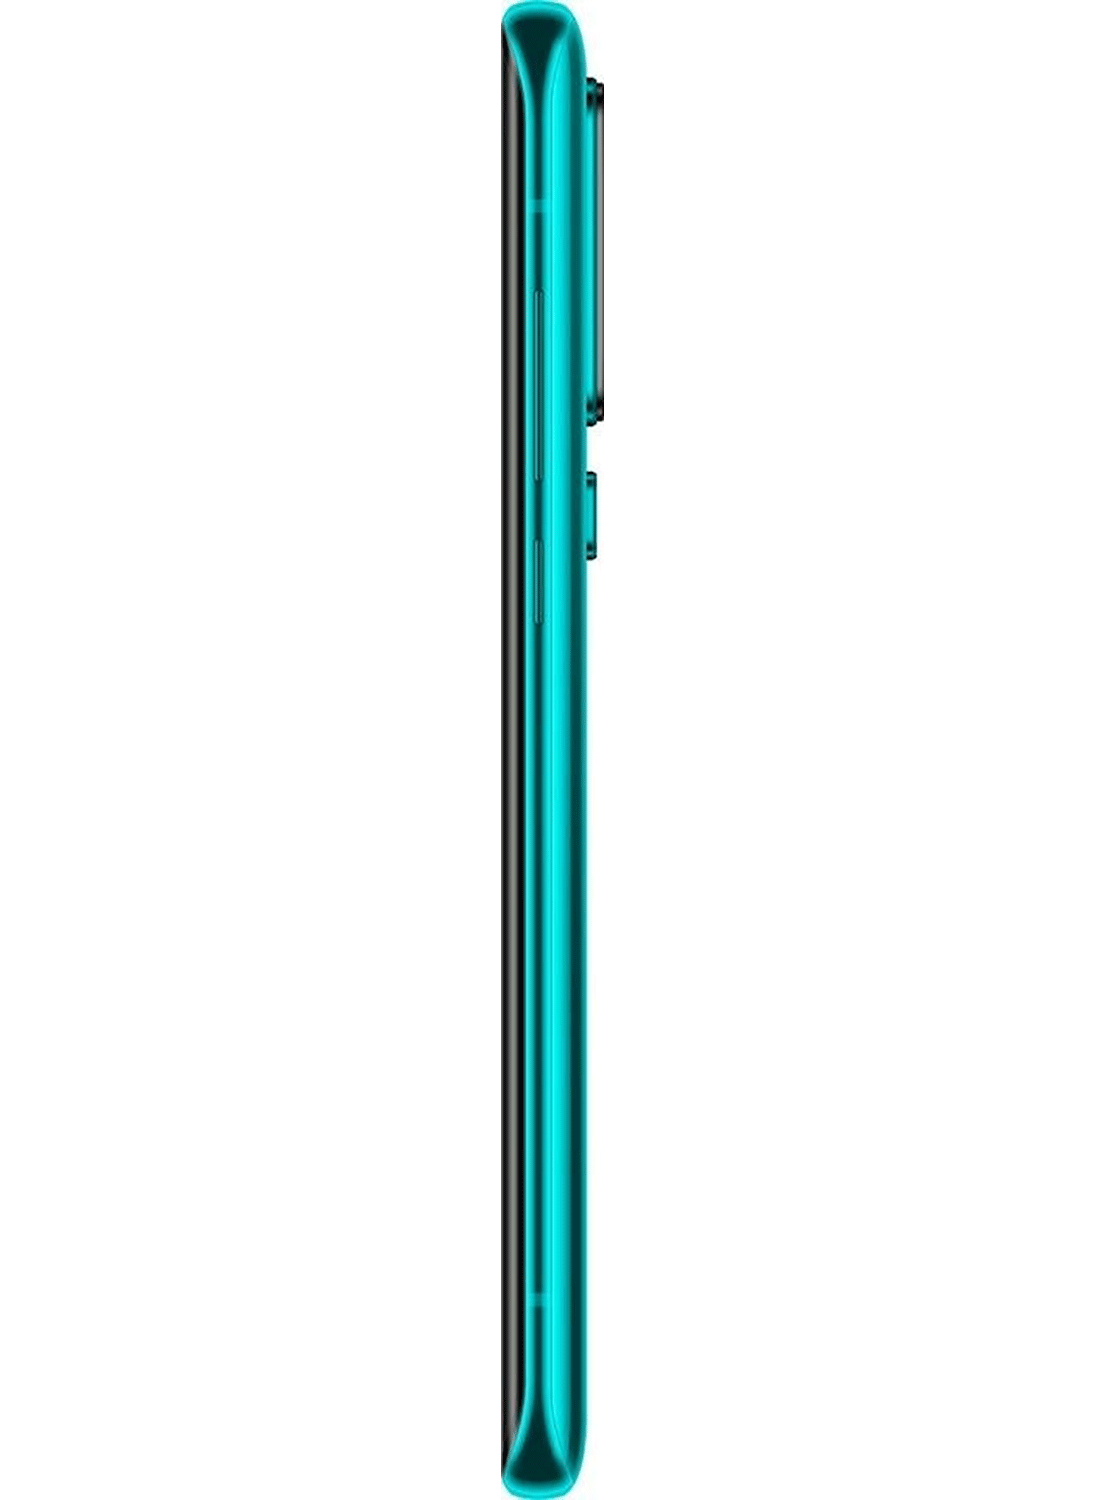 Xiaomi Mi 10 5G